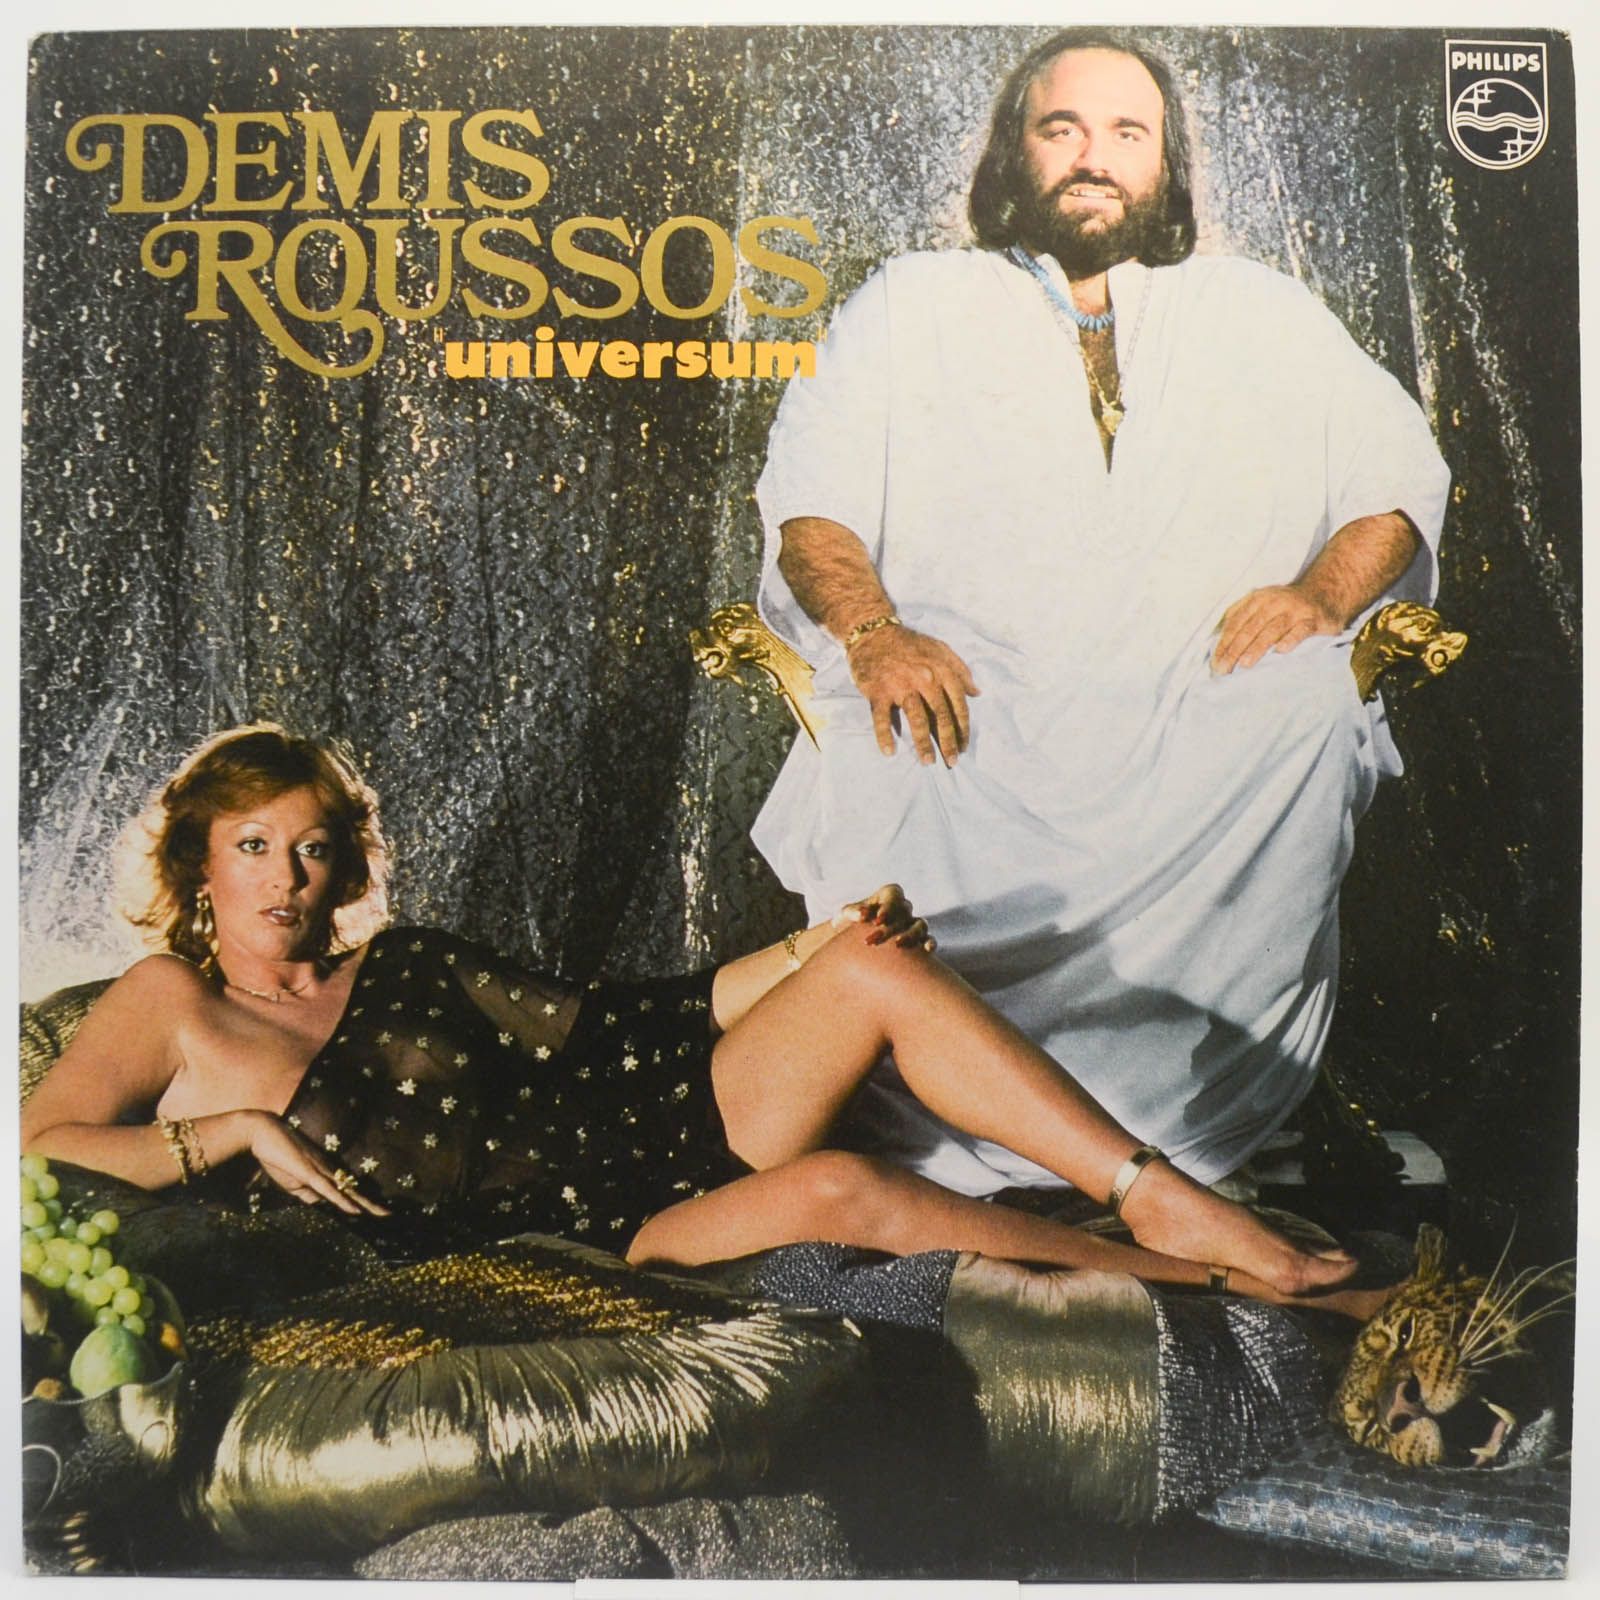 Demis Roussos — Universum (1-st, France), 1979